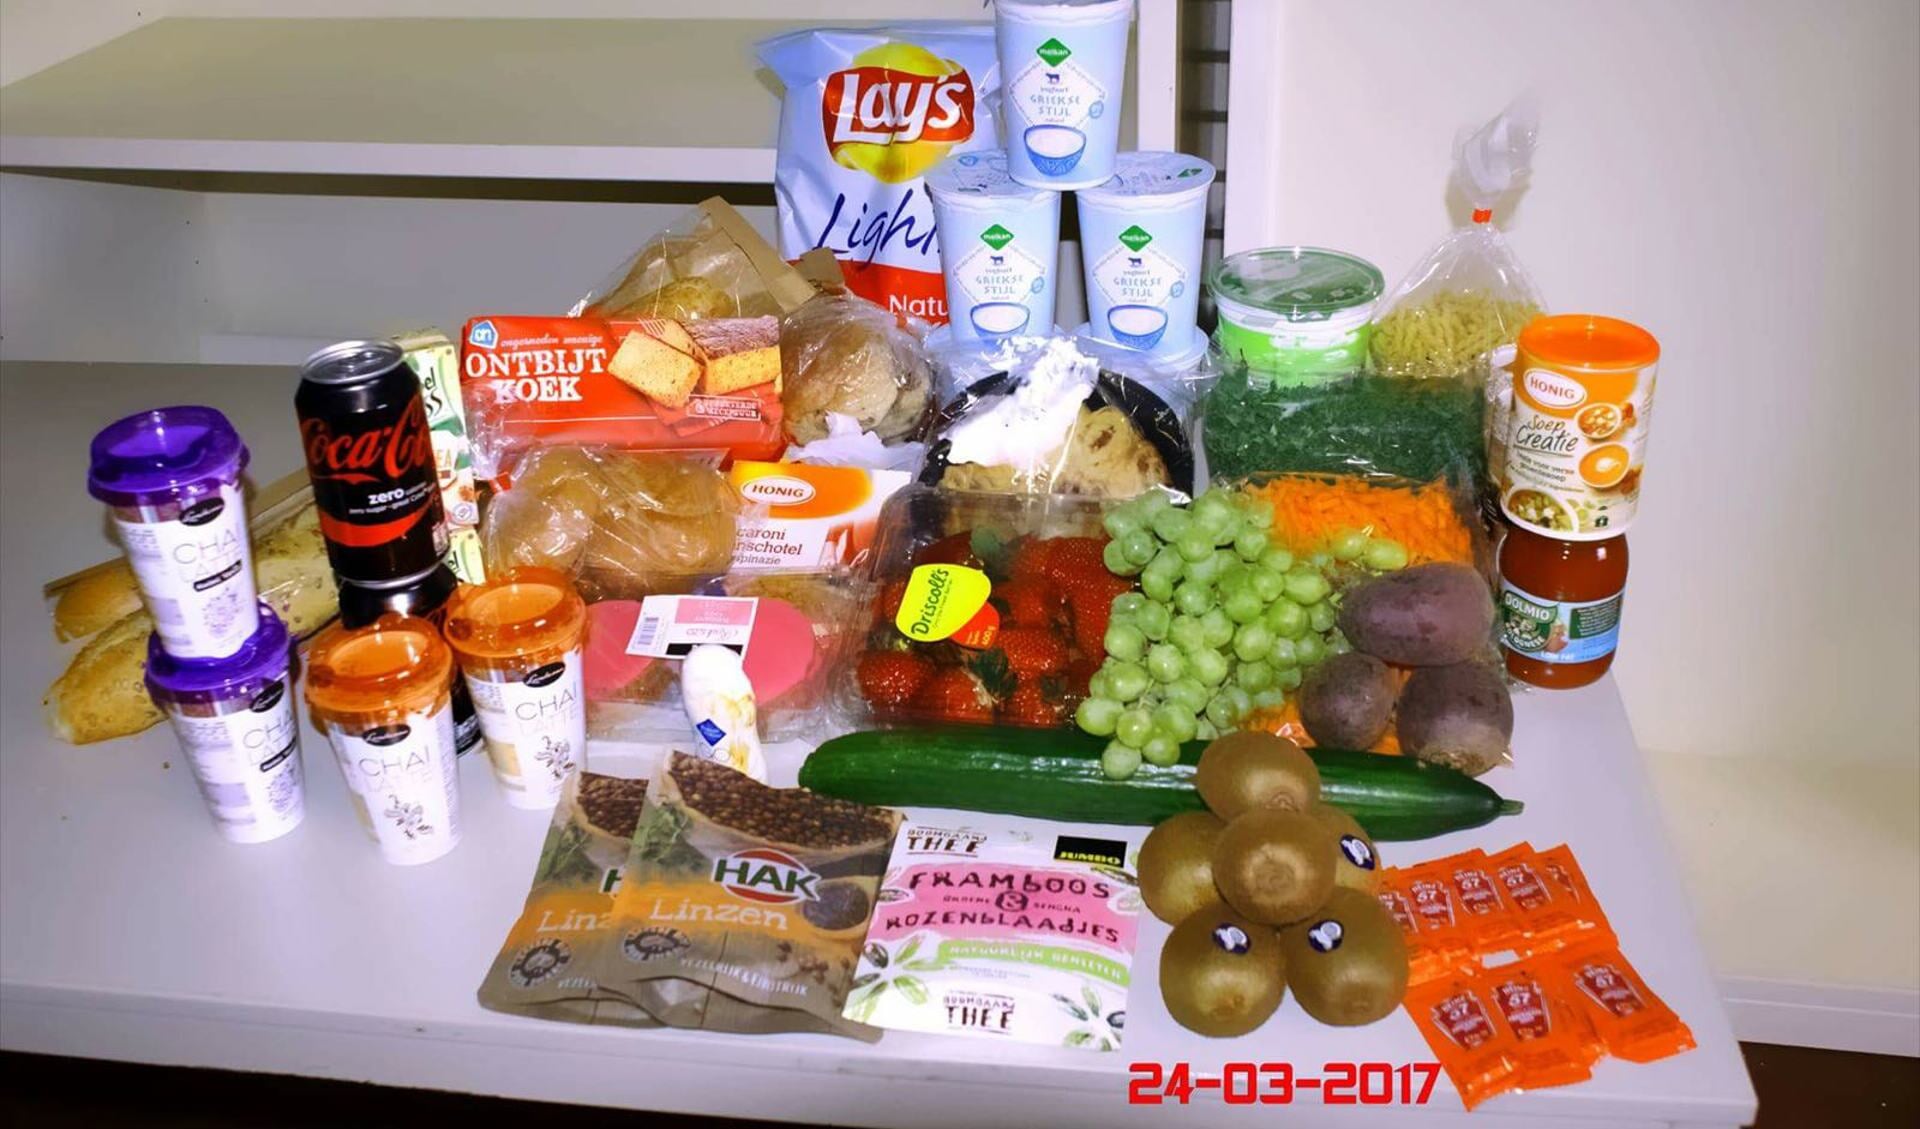 • Voedselpakket zoals dat volgens Voedselbank Krimpenerwaard vrijdagmorgen is verstrekt. (foto: www.facebook.com/voedselbankkrimpenerwaard)